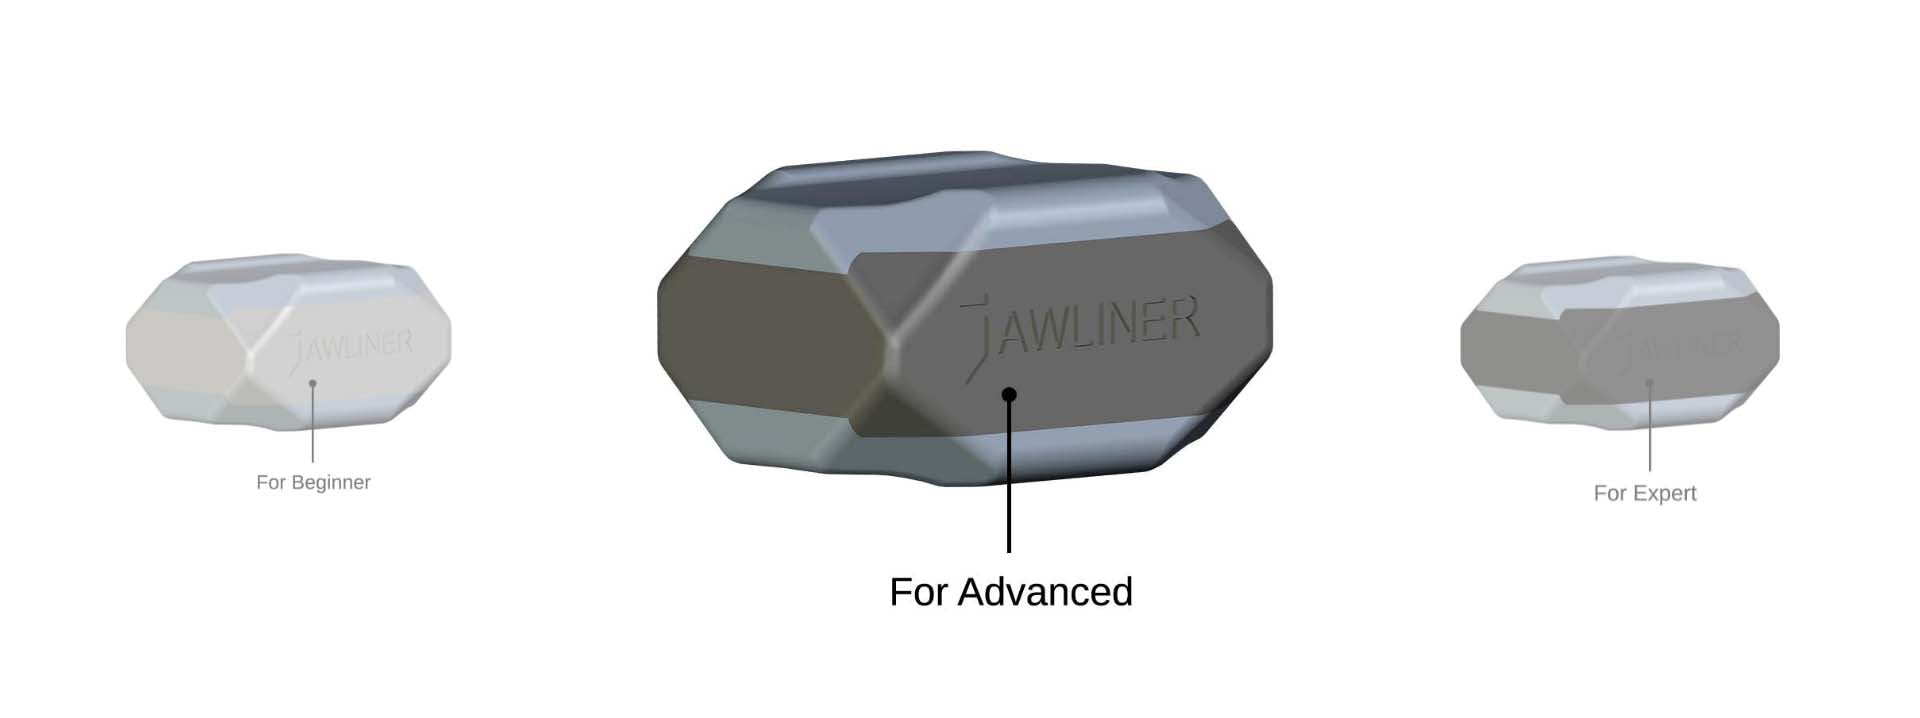 JAWLINER® 3.0 Bundle Pack